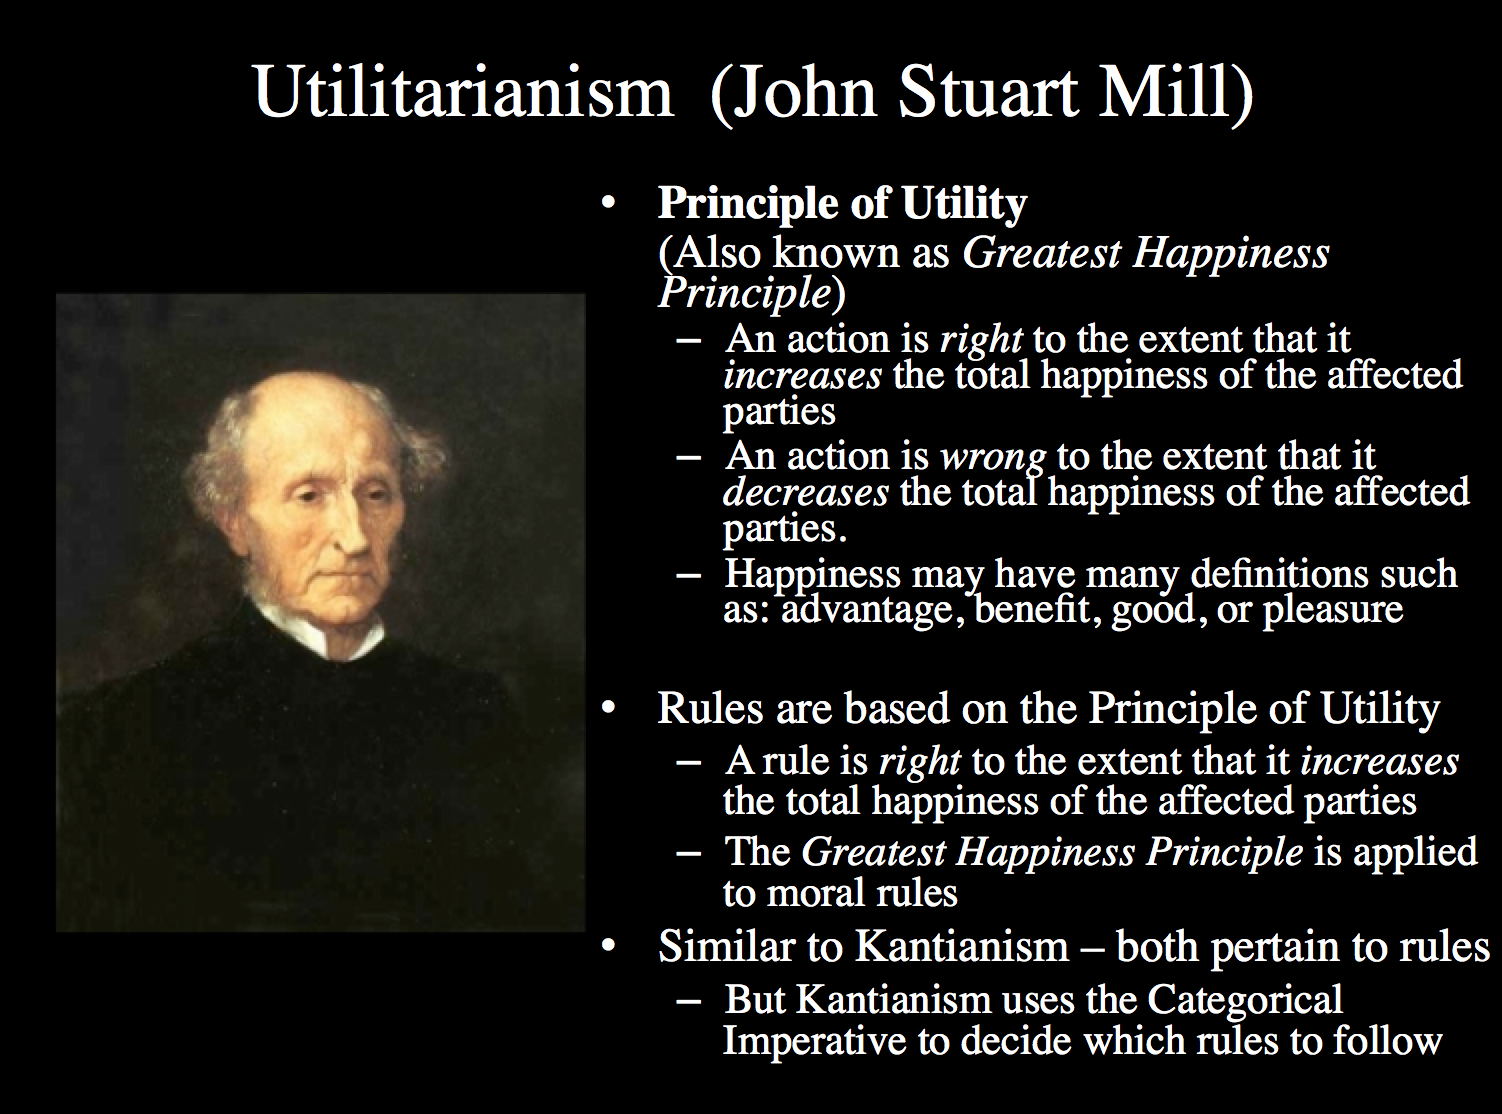 Утилитаризм в философии. Джон Стюарт Милль утилитаризм. Джон Стюарт Милль философия. Джон Стюарт Милль слайд. Утилитаризм это в философии.